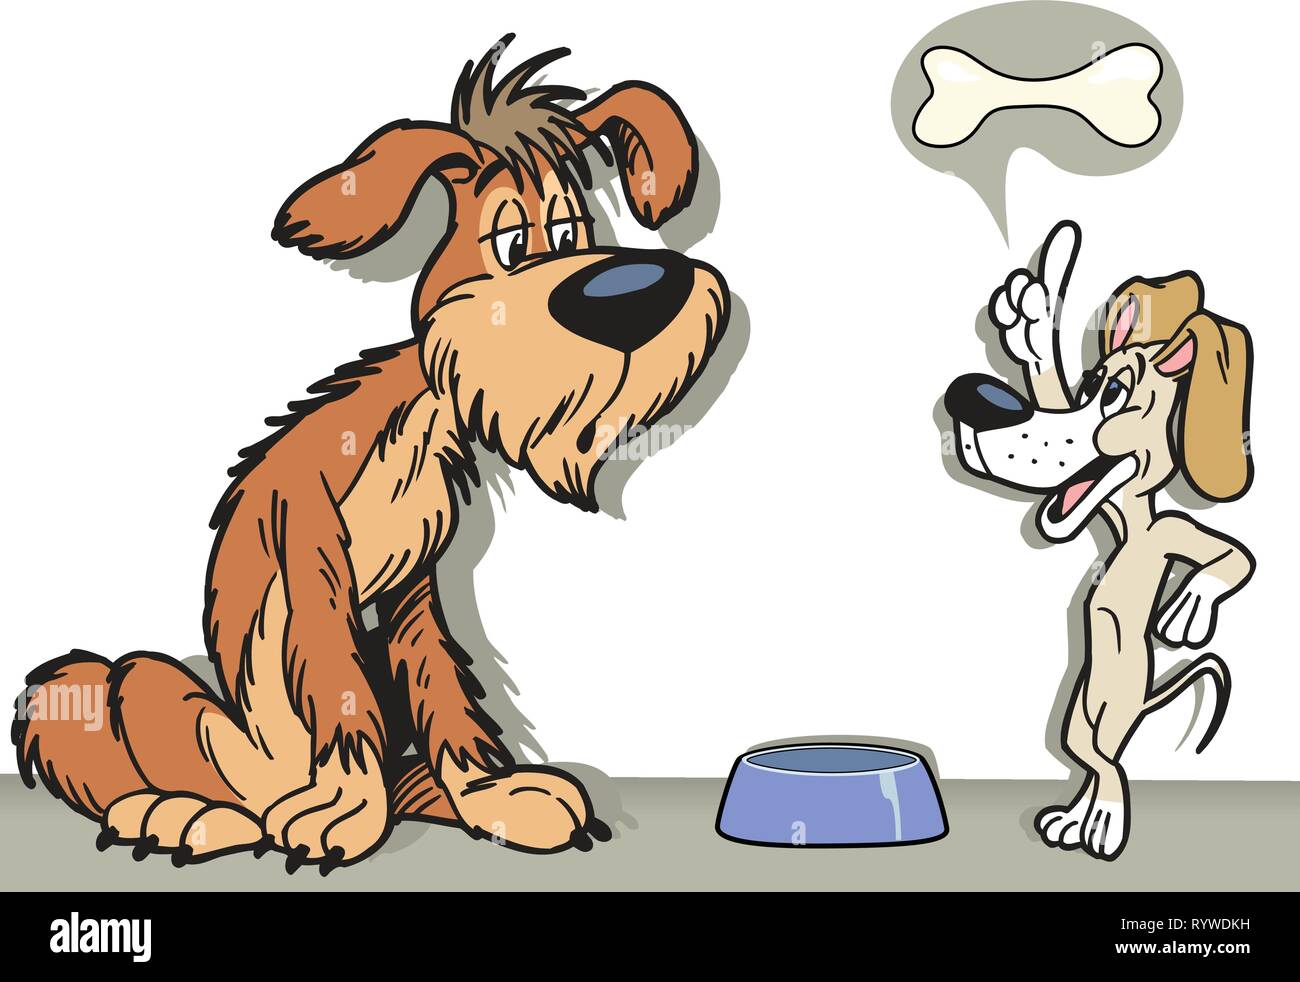 Die Abbildung zeigt zwei cartoon Hunde. Sie sprechen über Essen. Abbildung auf separaten Ebenen getan. Stock Vektor